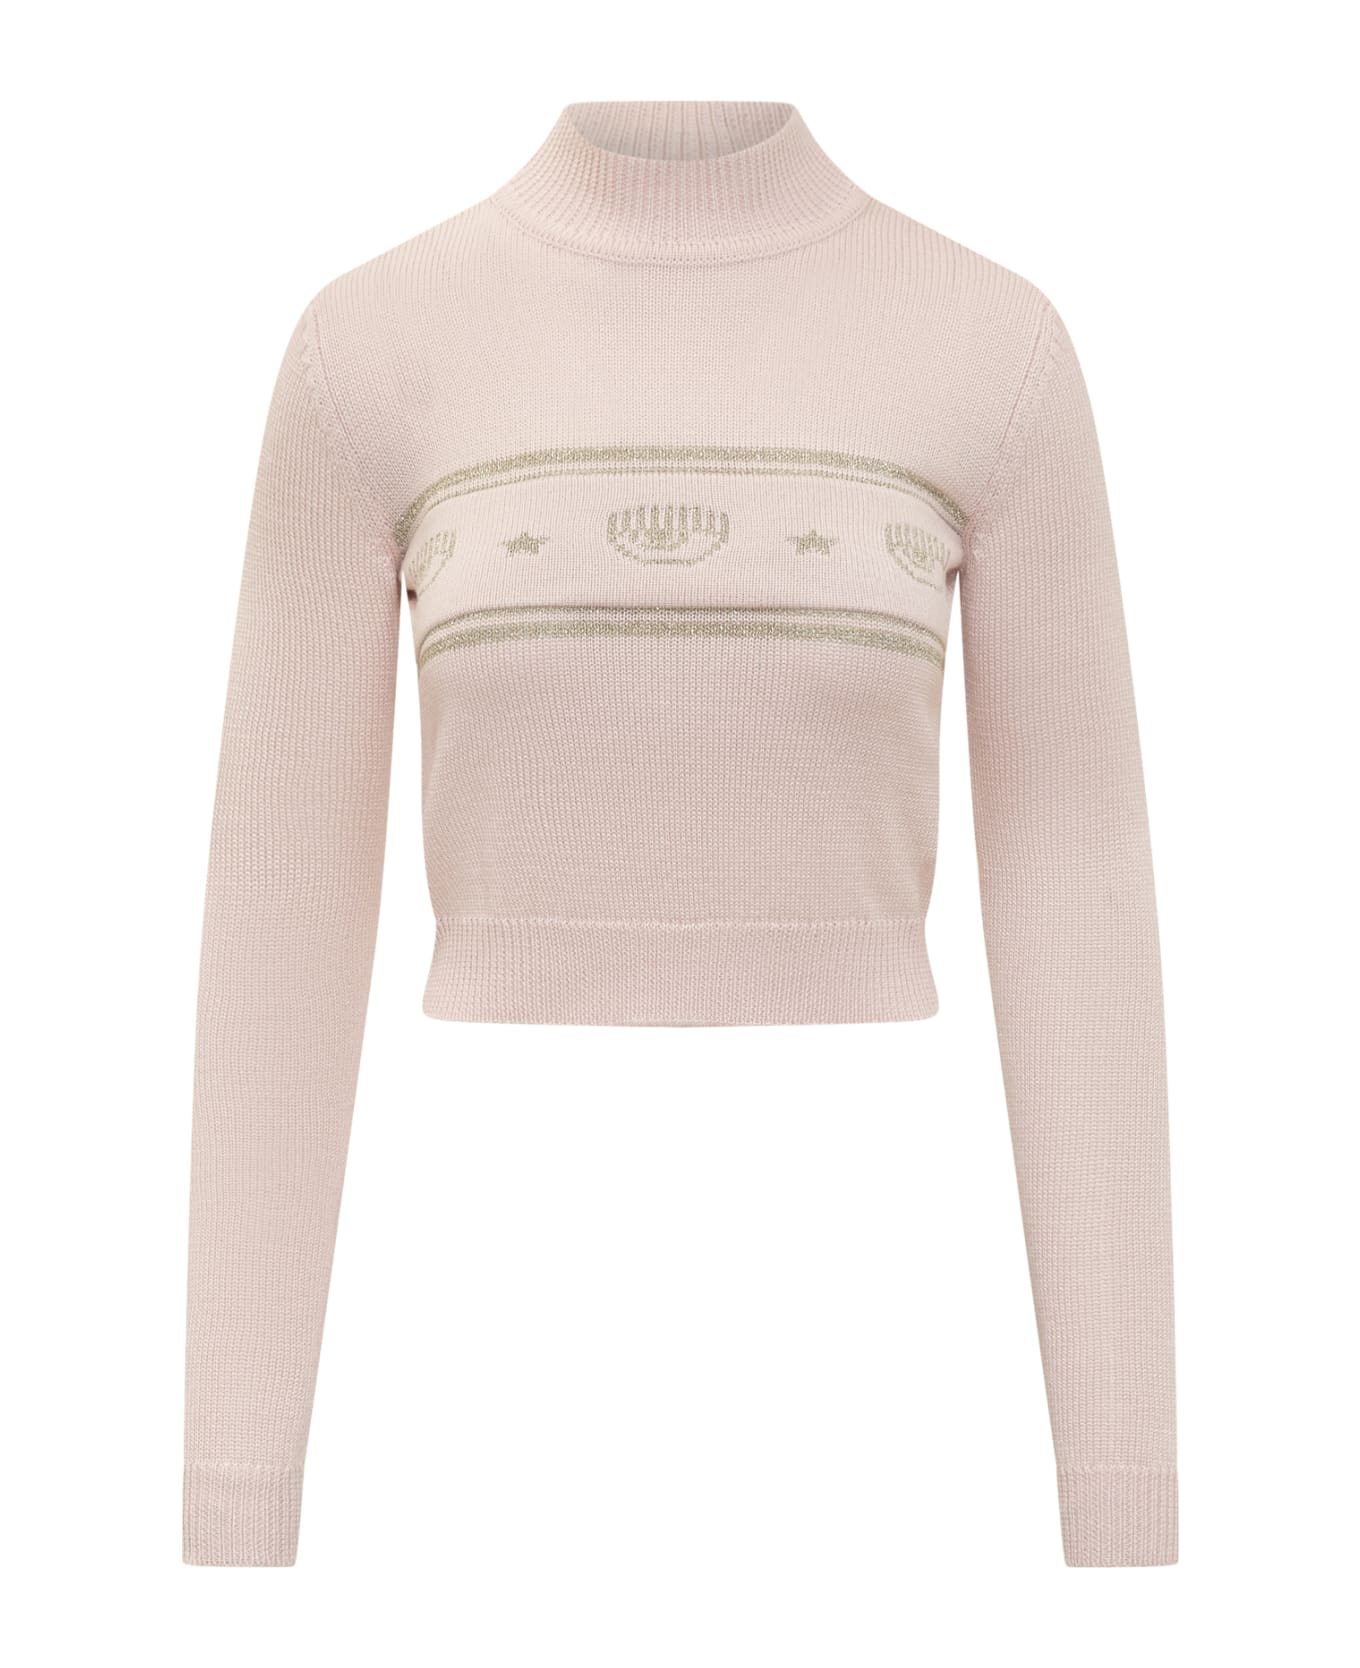 Chiara Ferragni Eye Sweater - FAIRY TALE ニットウェア